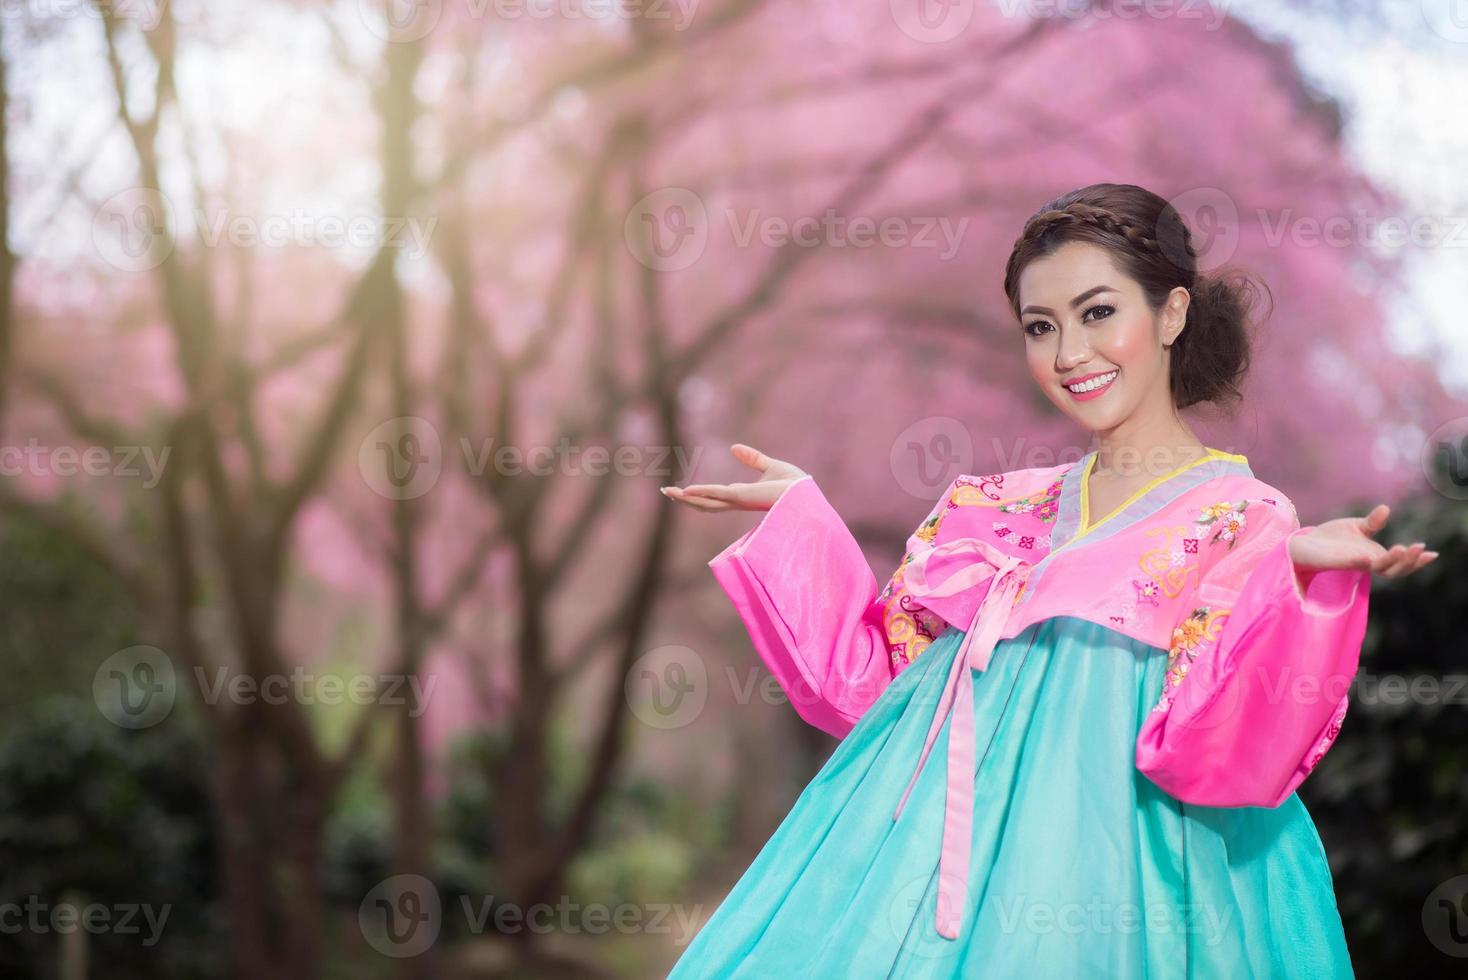 hanbok, la robe coréenne traditionnelle et belle fille asiatique avec sakura photo